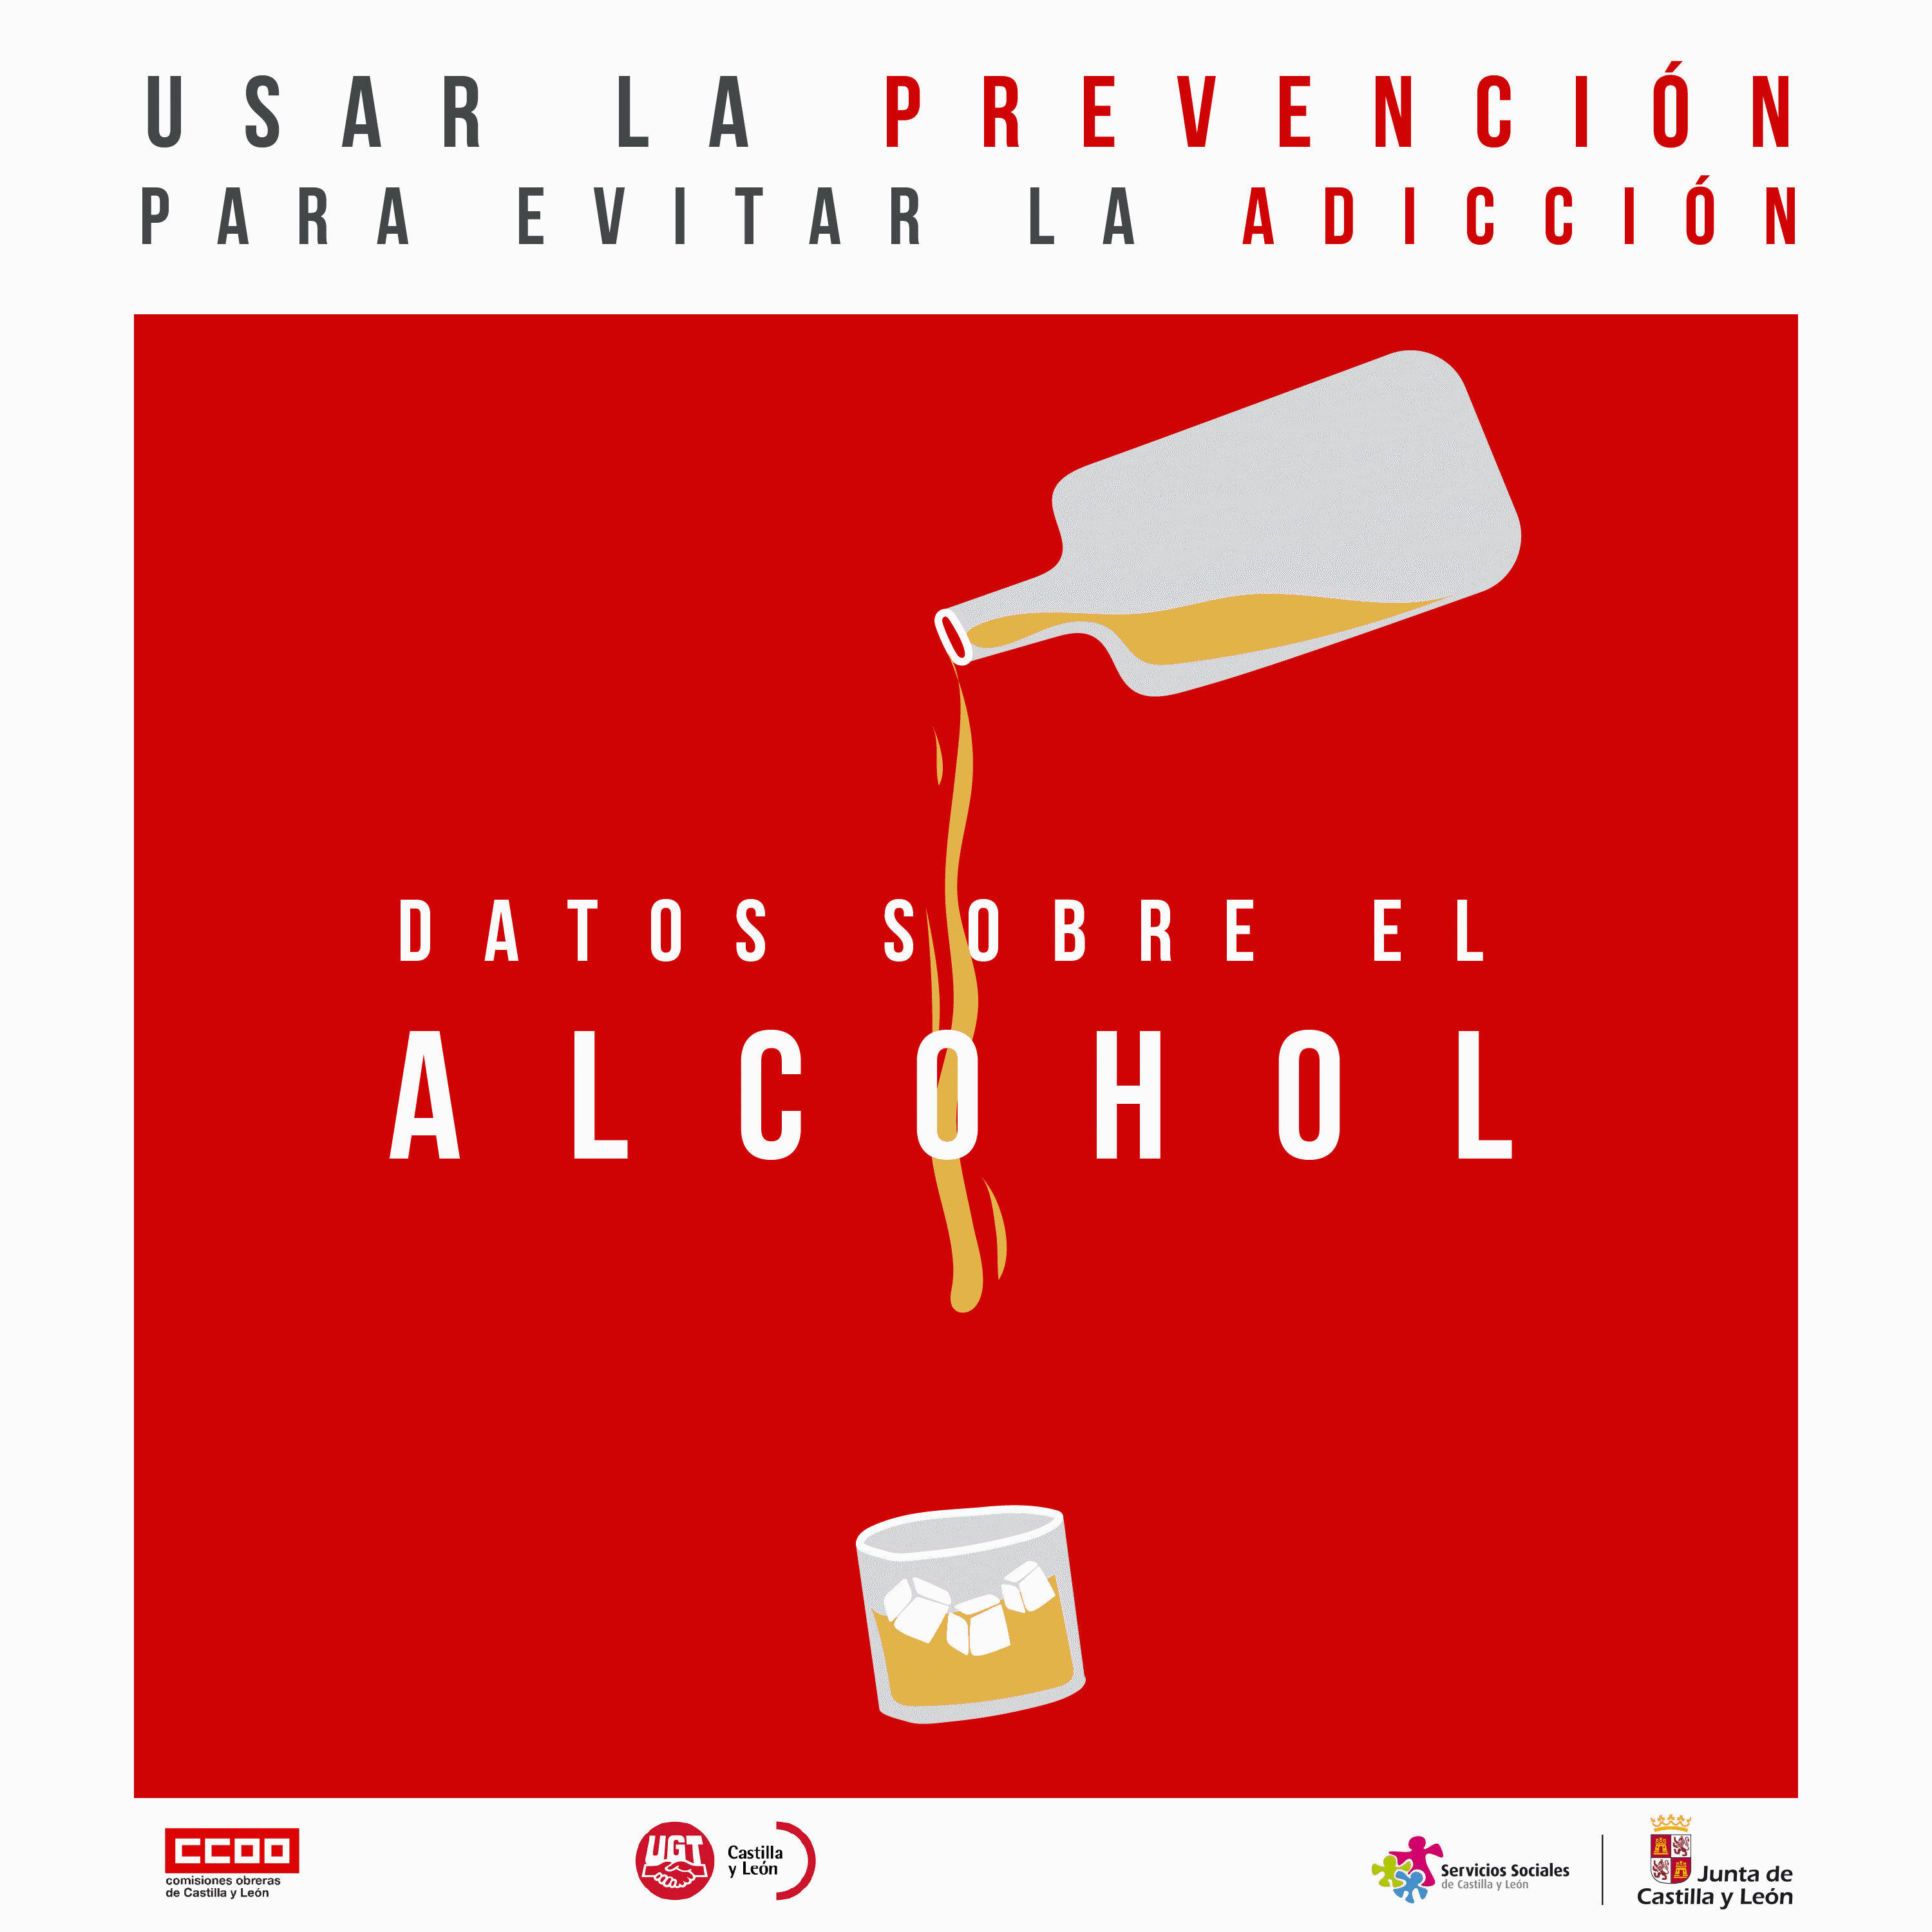 Campaña "Usar la prevención para evitar la adicción" Datos sobre el consumo de alcohol en el puesto de trabajo